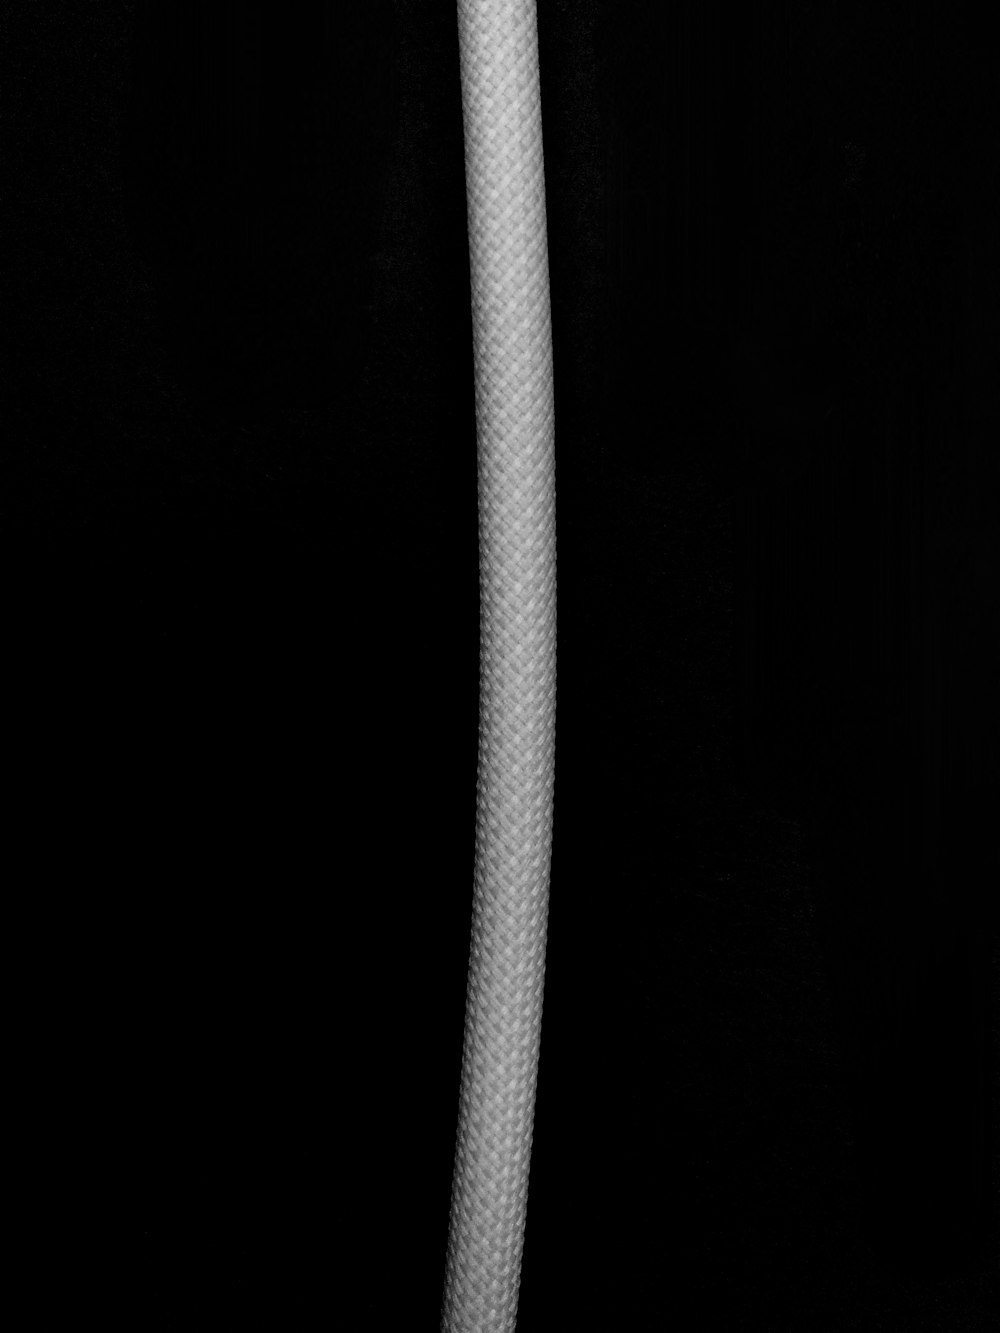 검은 배경에 흰색 로프